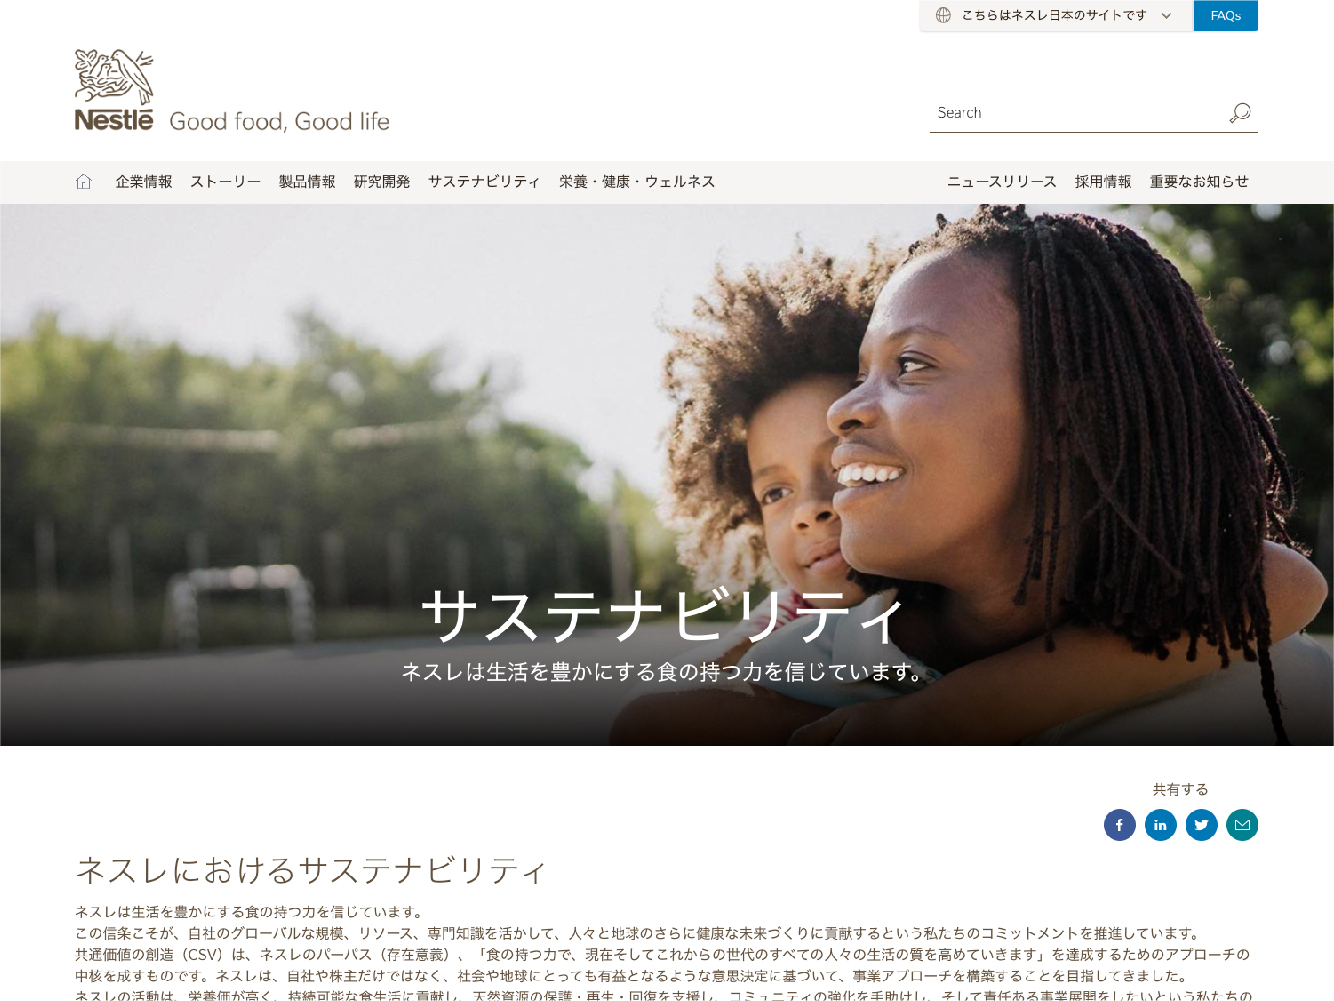 サステナビリティ | ネスレ日本 企業サイト | Nestlé : Good Food, Good Life (nestle.co.jp)